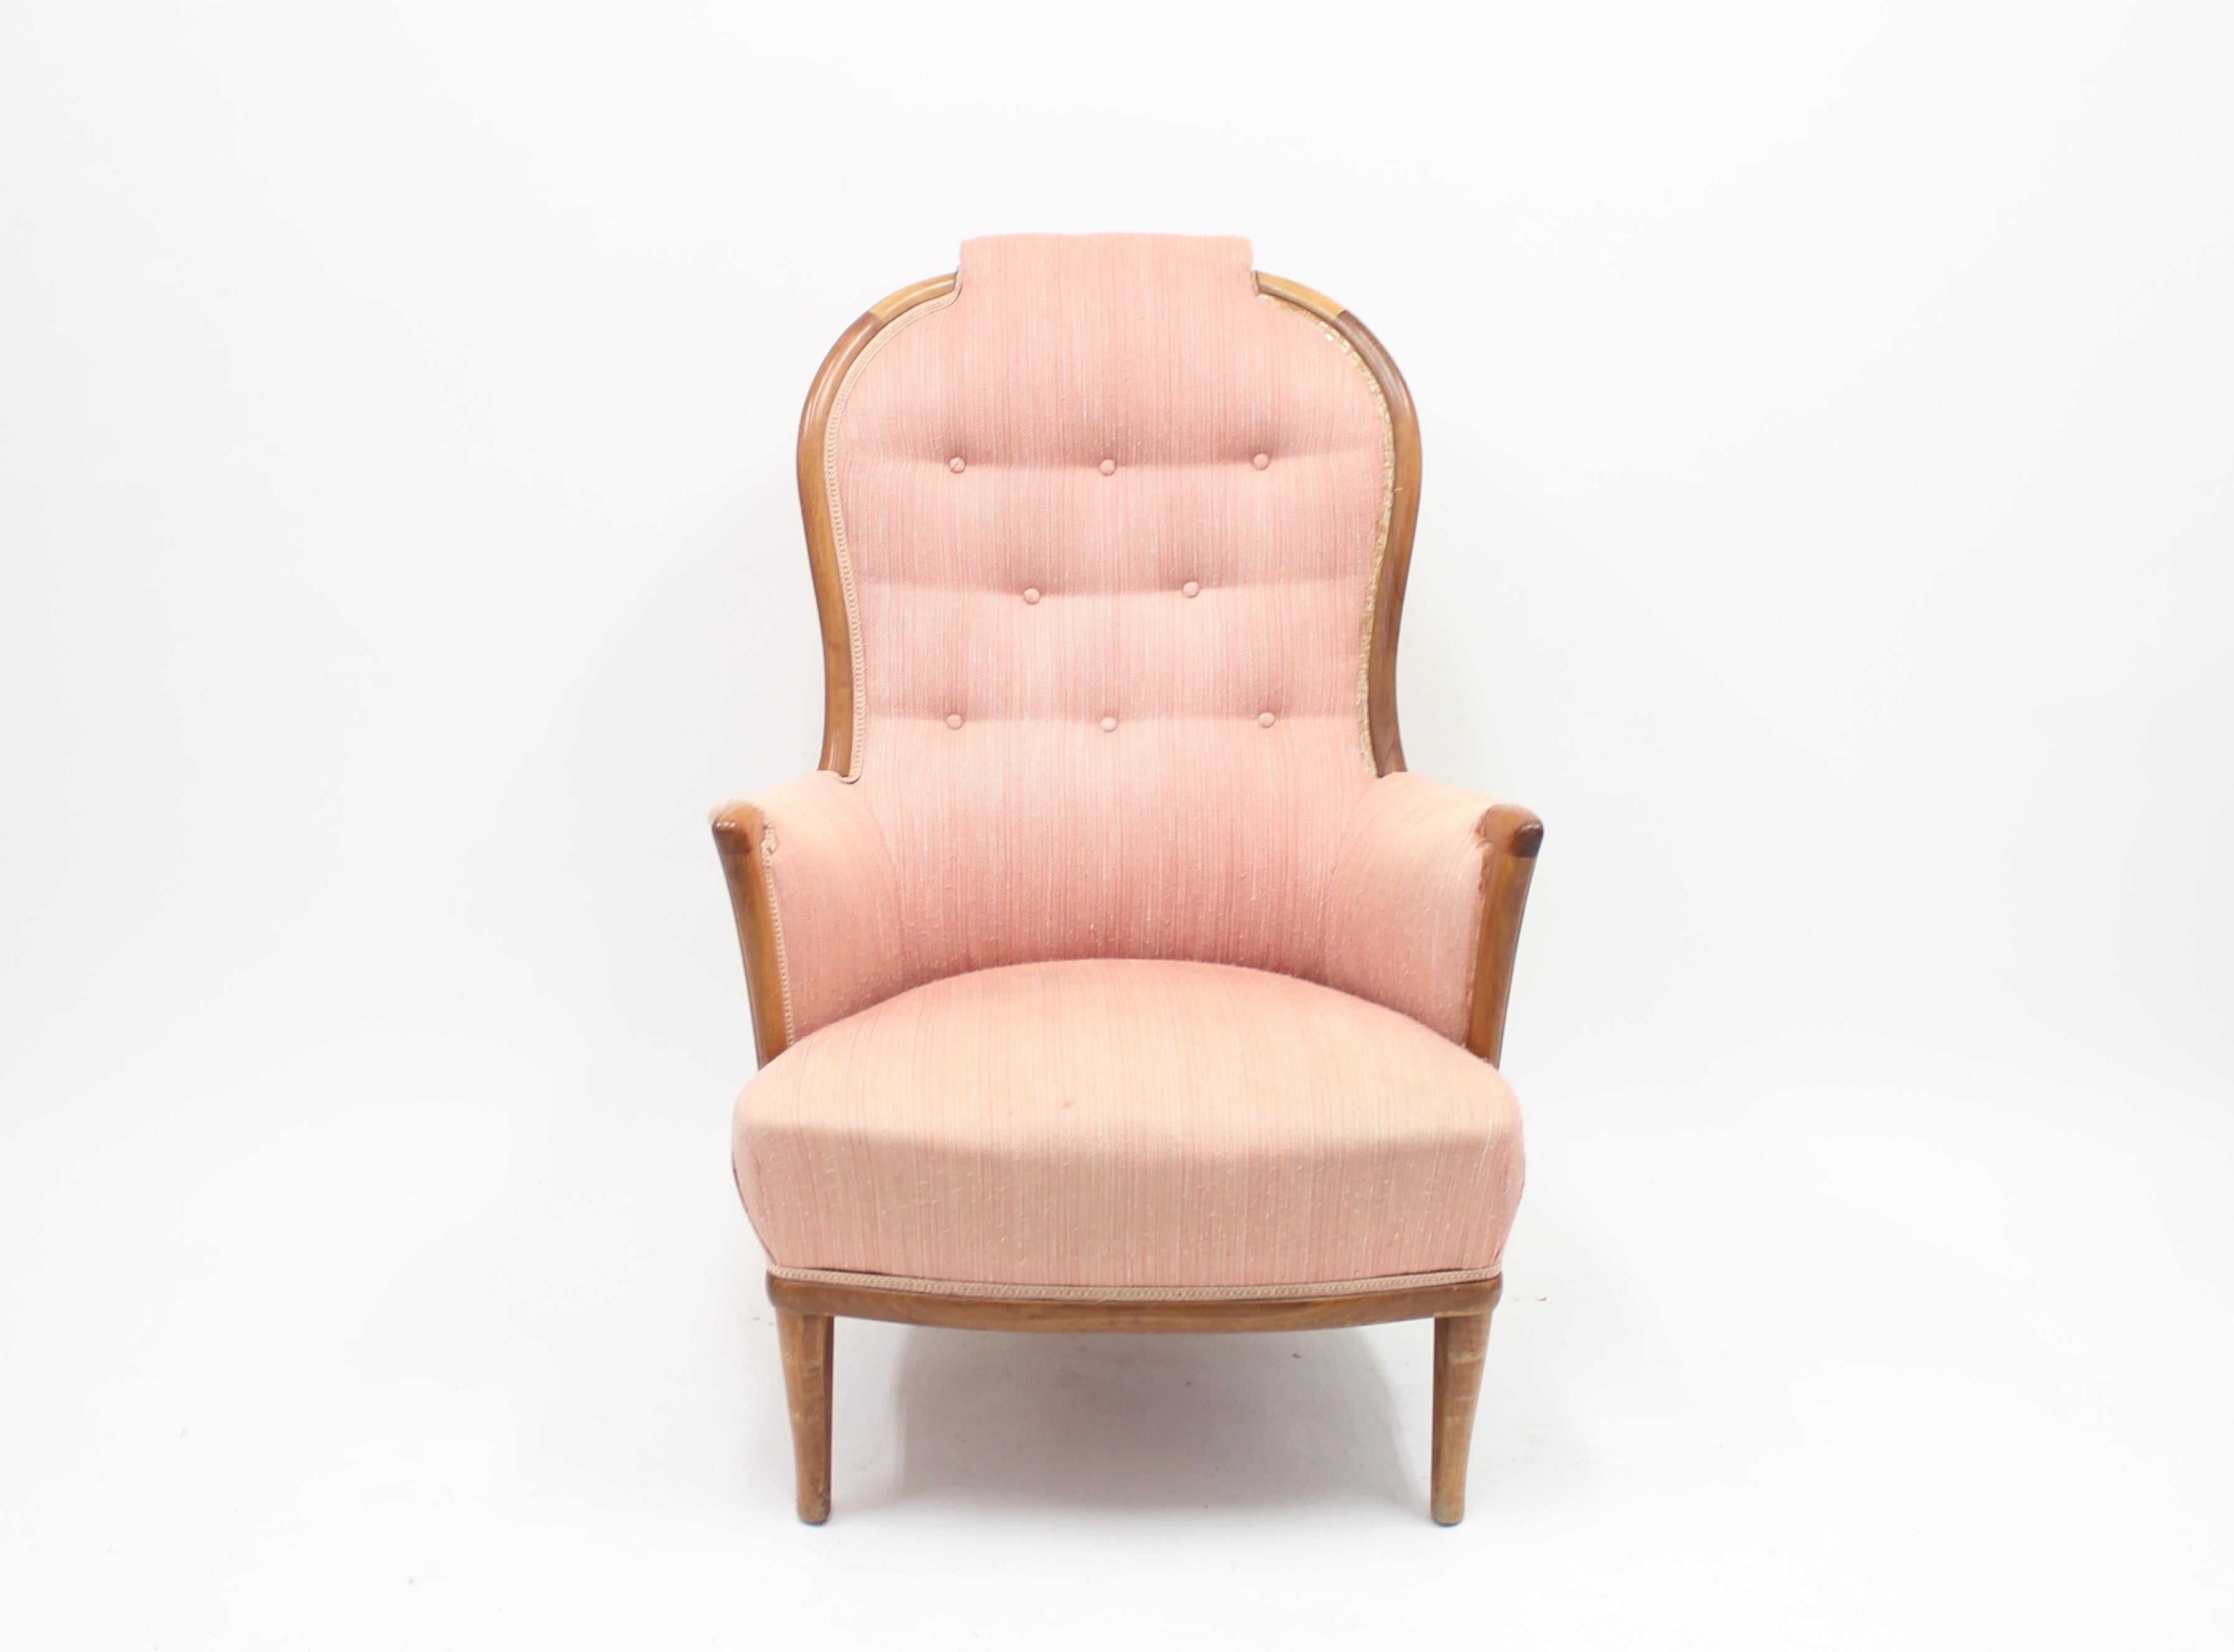 Scandinavian Modern Lounge Chair Vår Fru by Carl Malmsten for Bodafors, 1960s